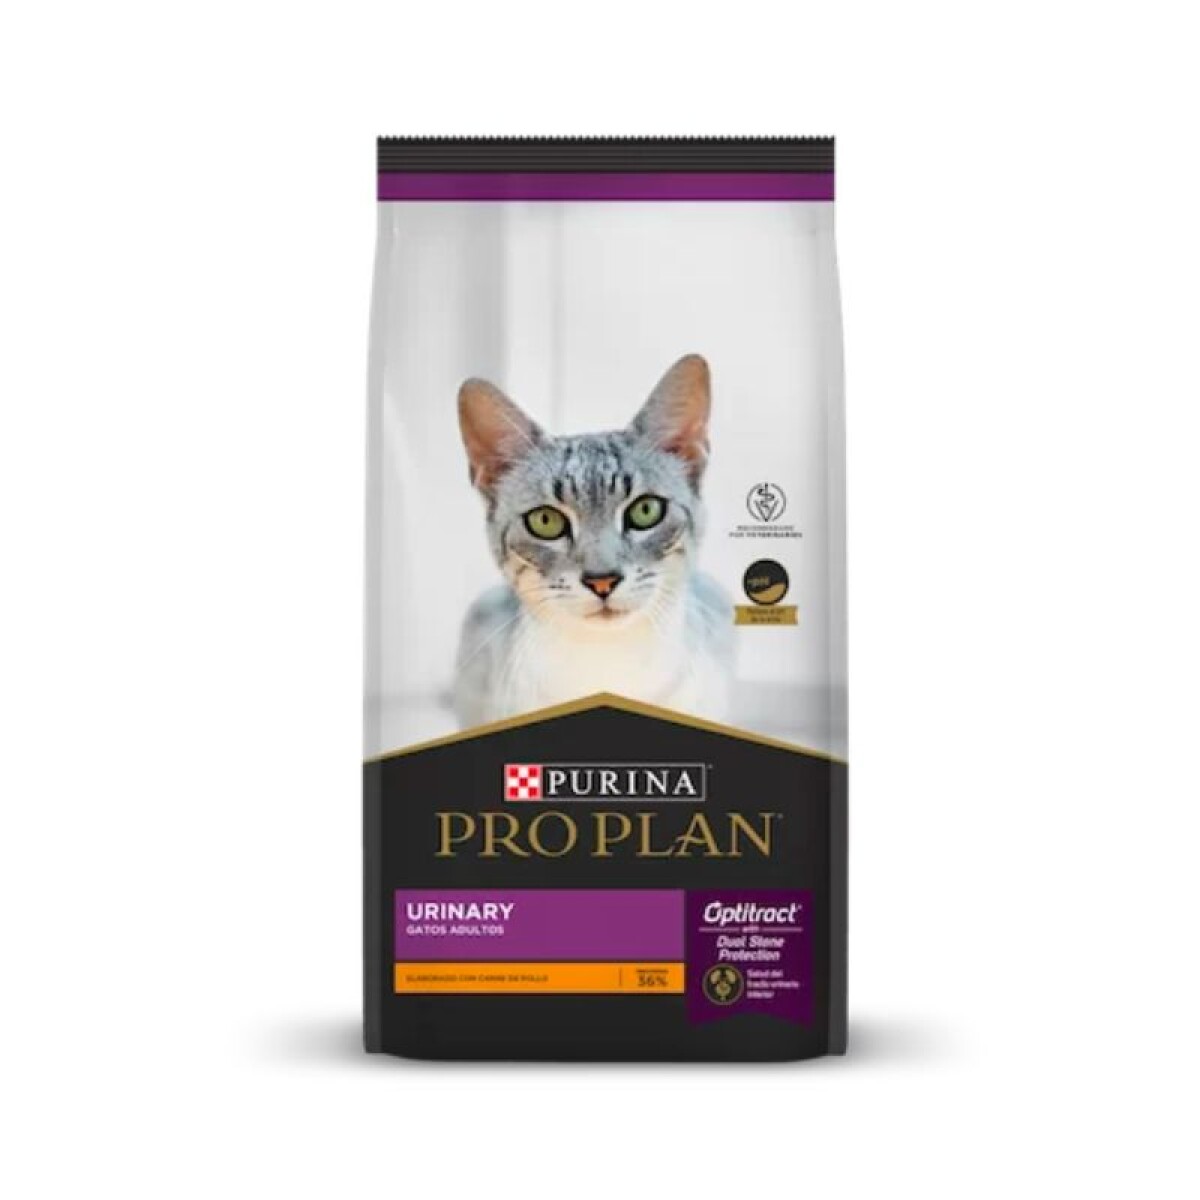 PROPLAN URINARY CAT 1KG - Proplan Urinary Cat 1kg 